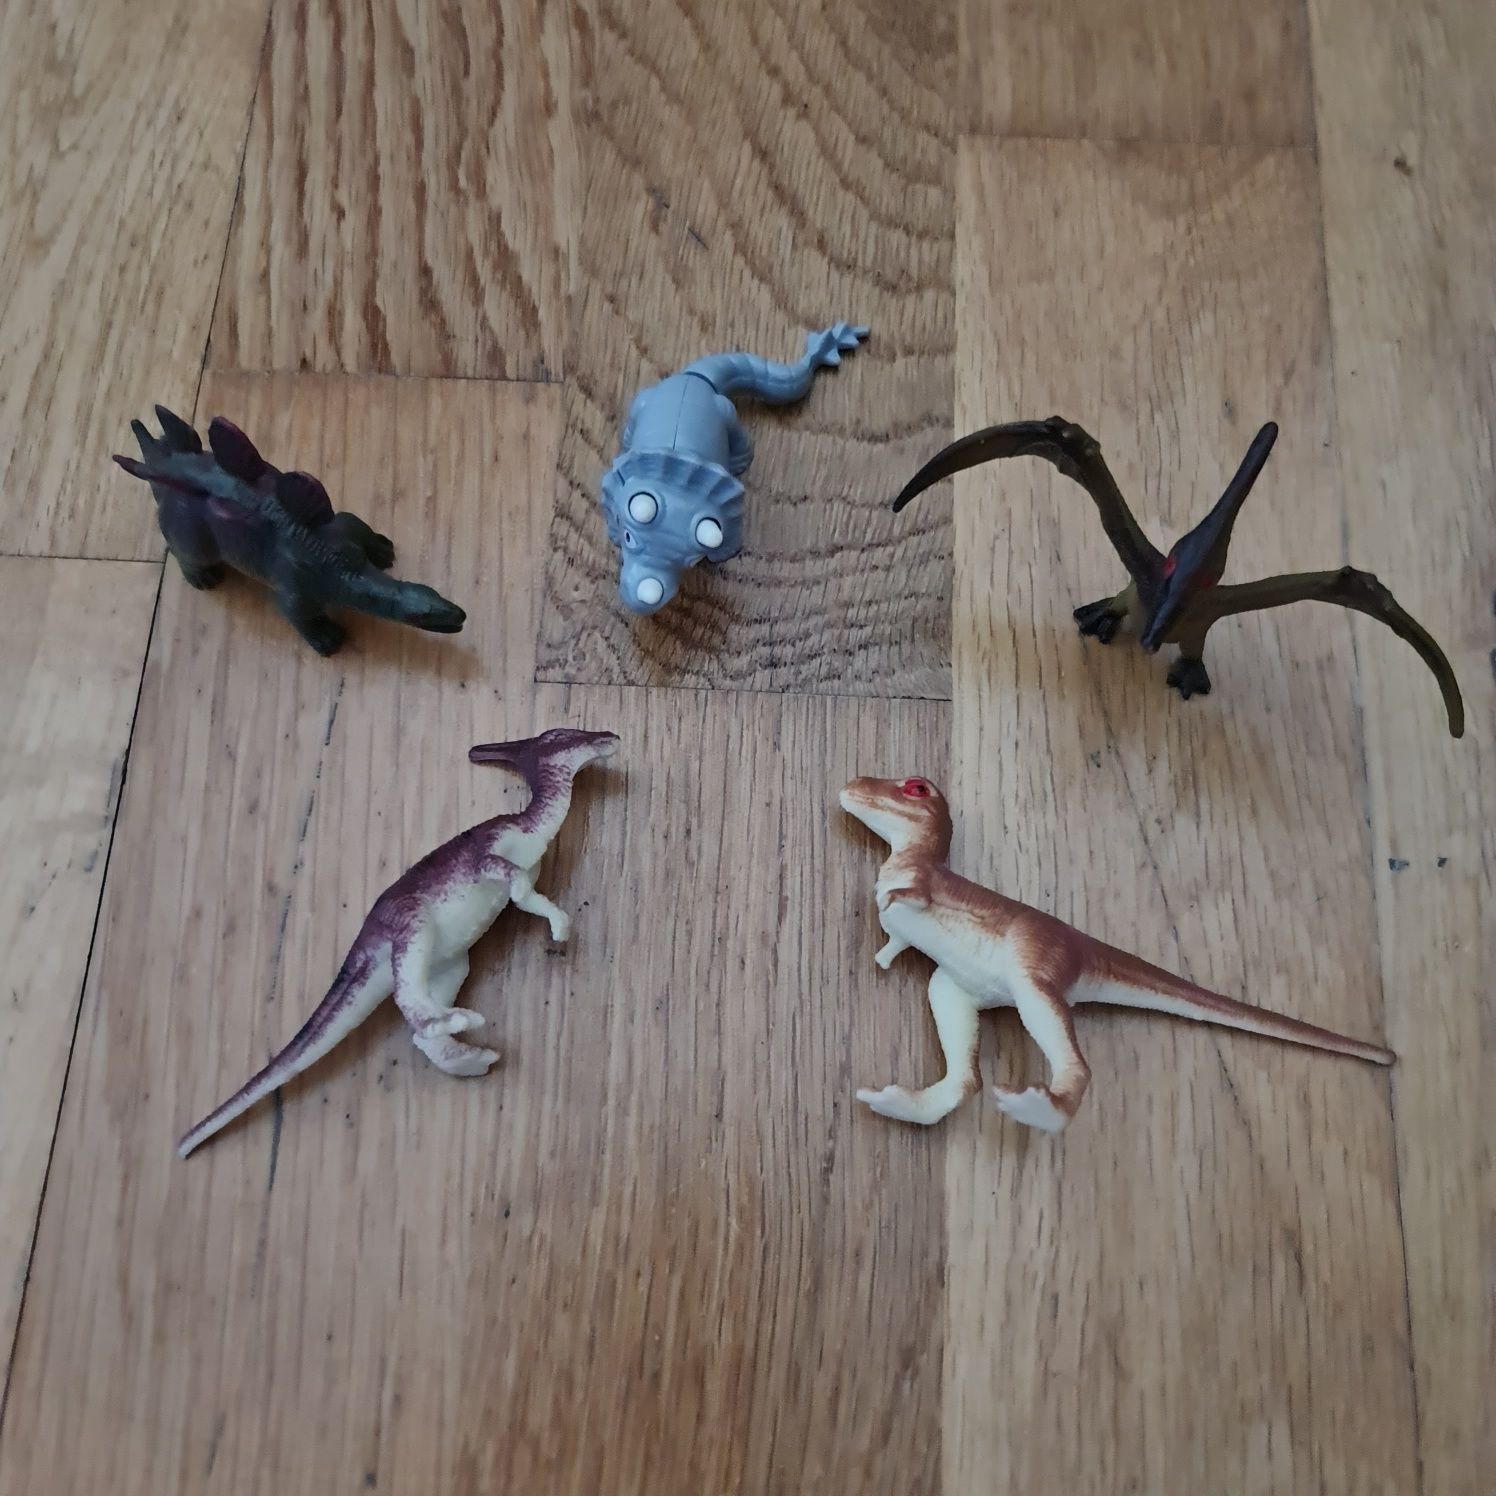 Dinossauros da loja Imaginarium (Tolo) com oferta